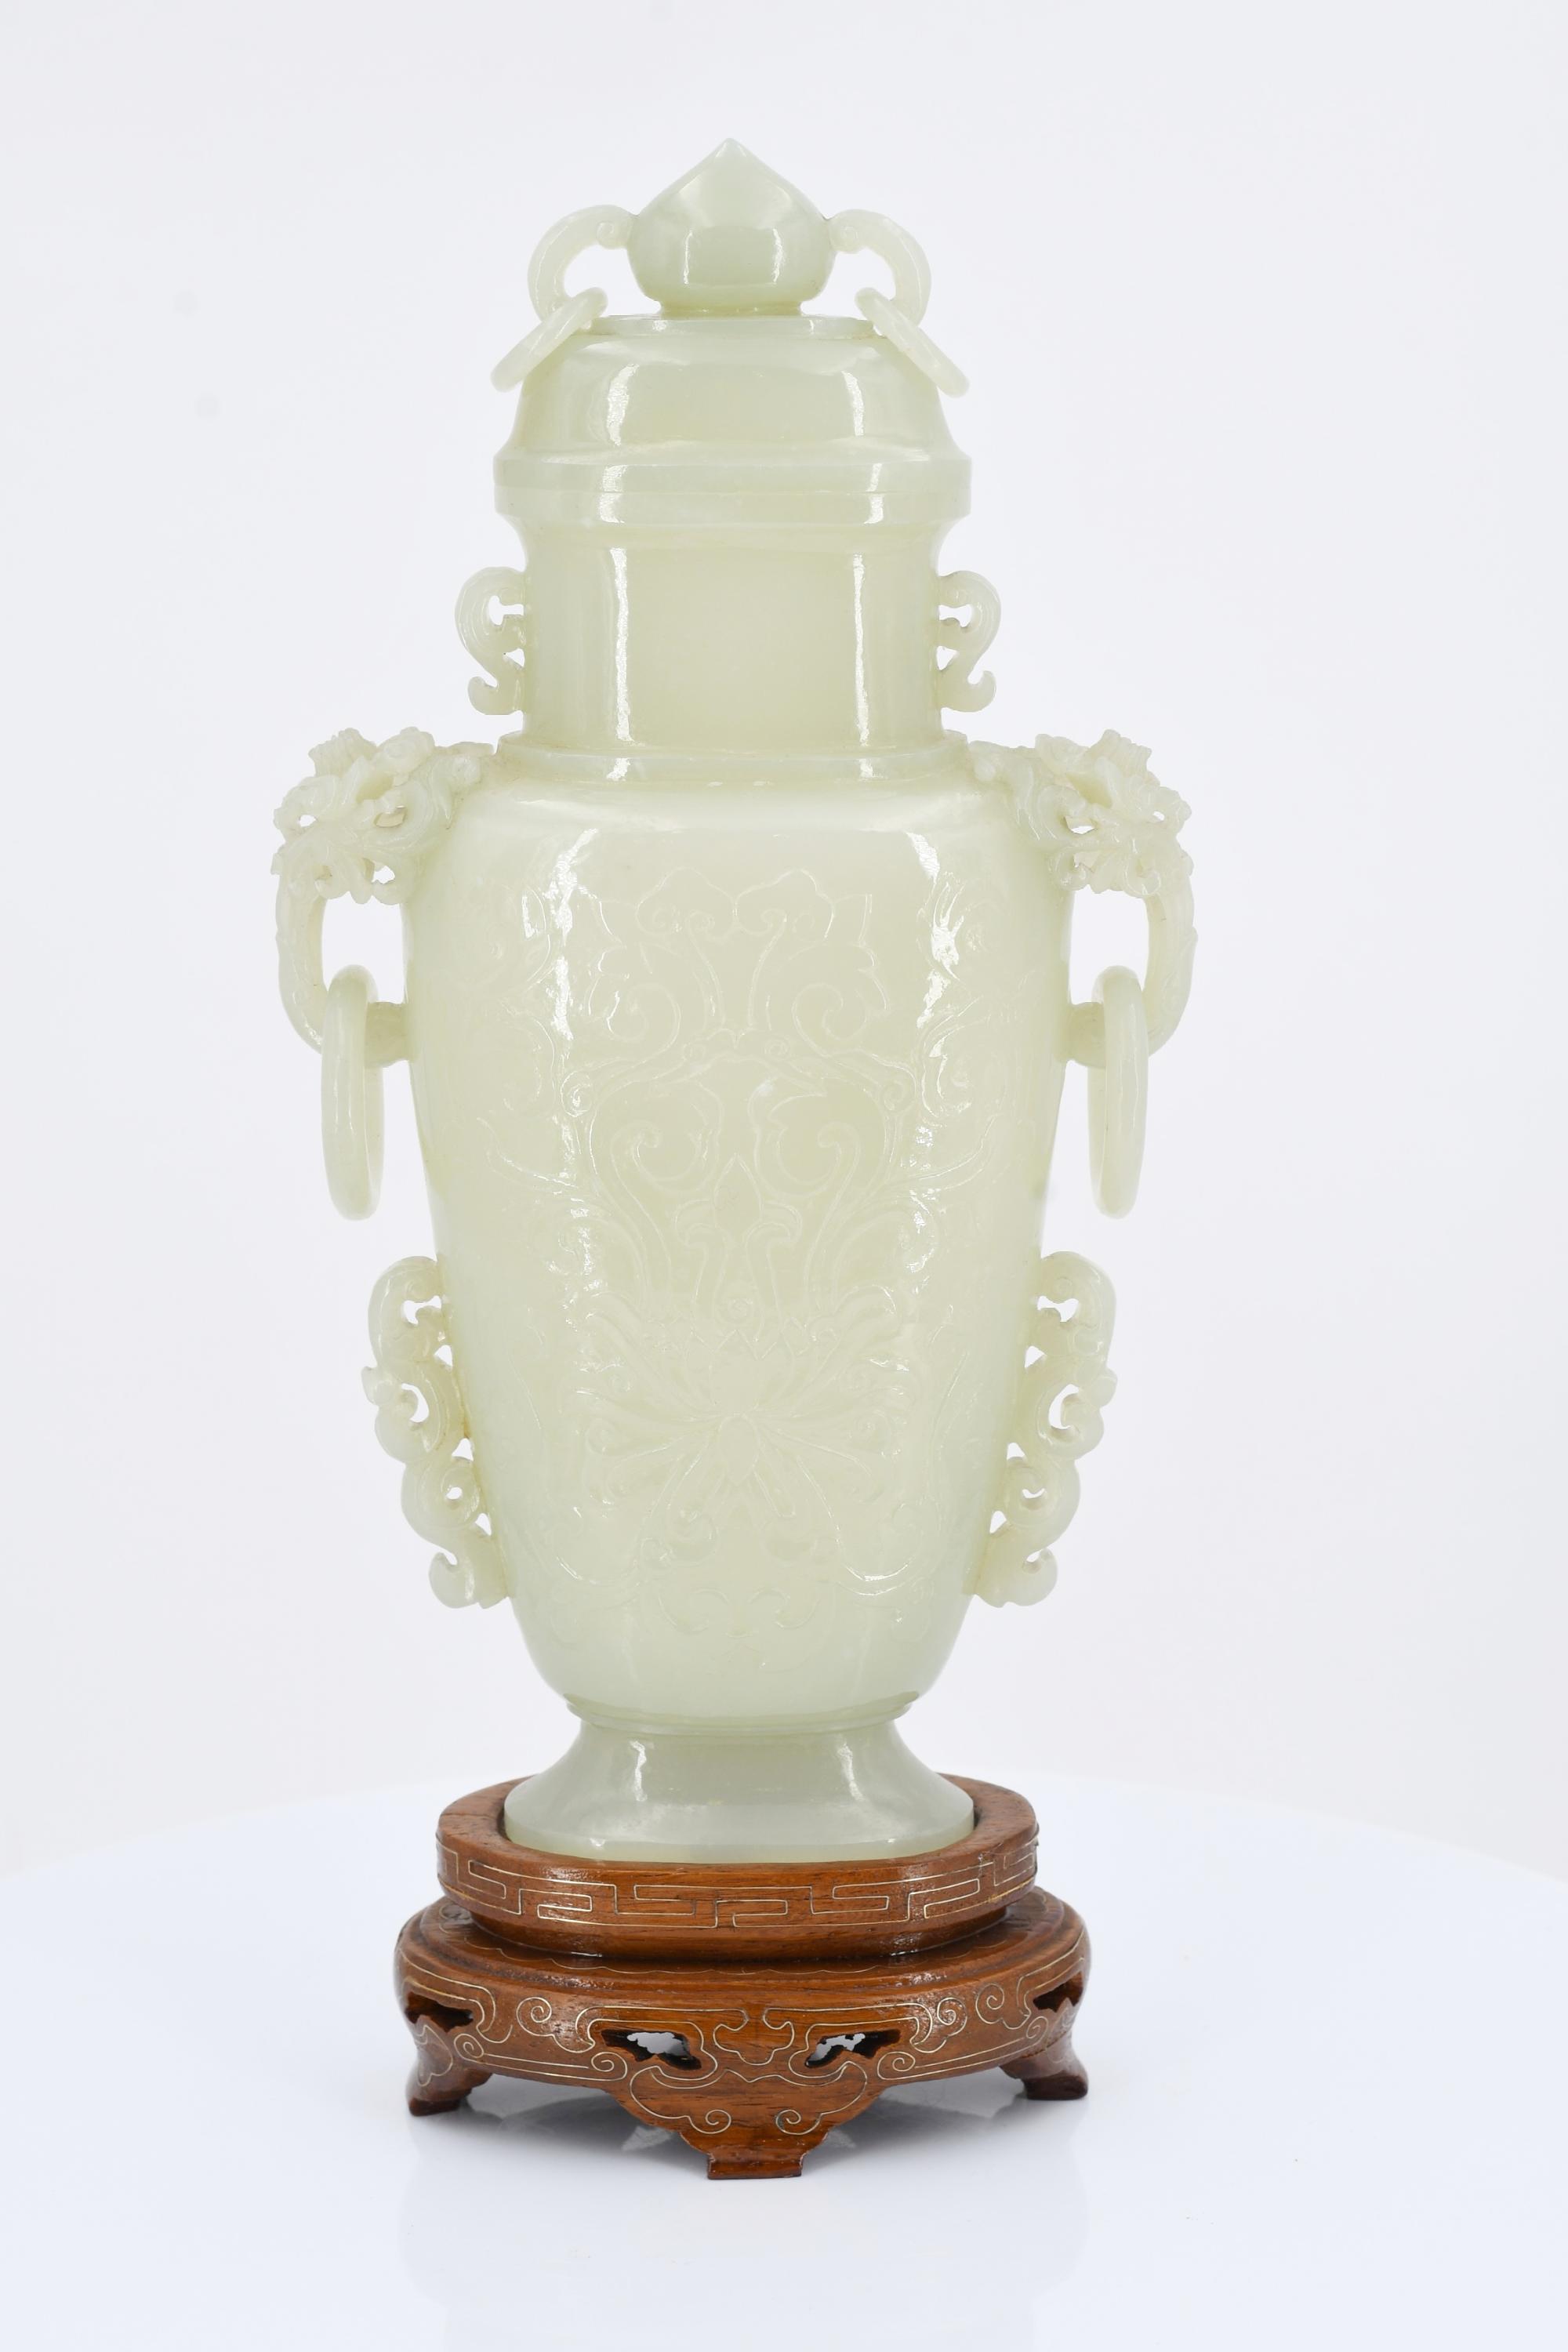 Lidded vase with pedestal - Image 4 of 7